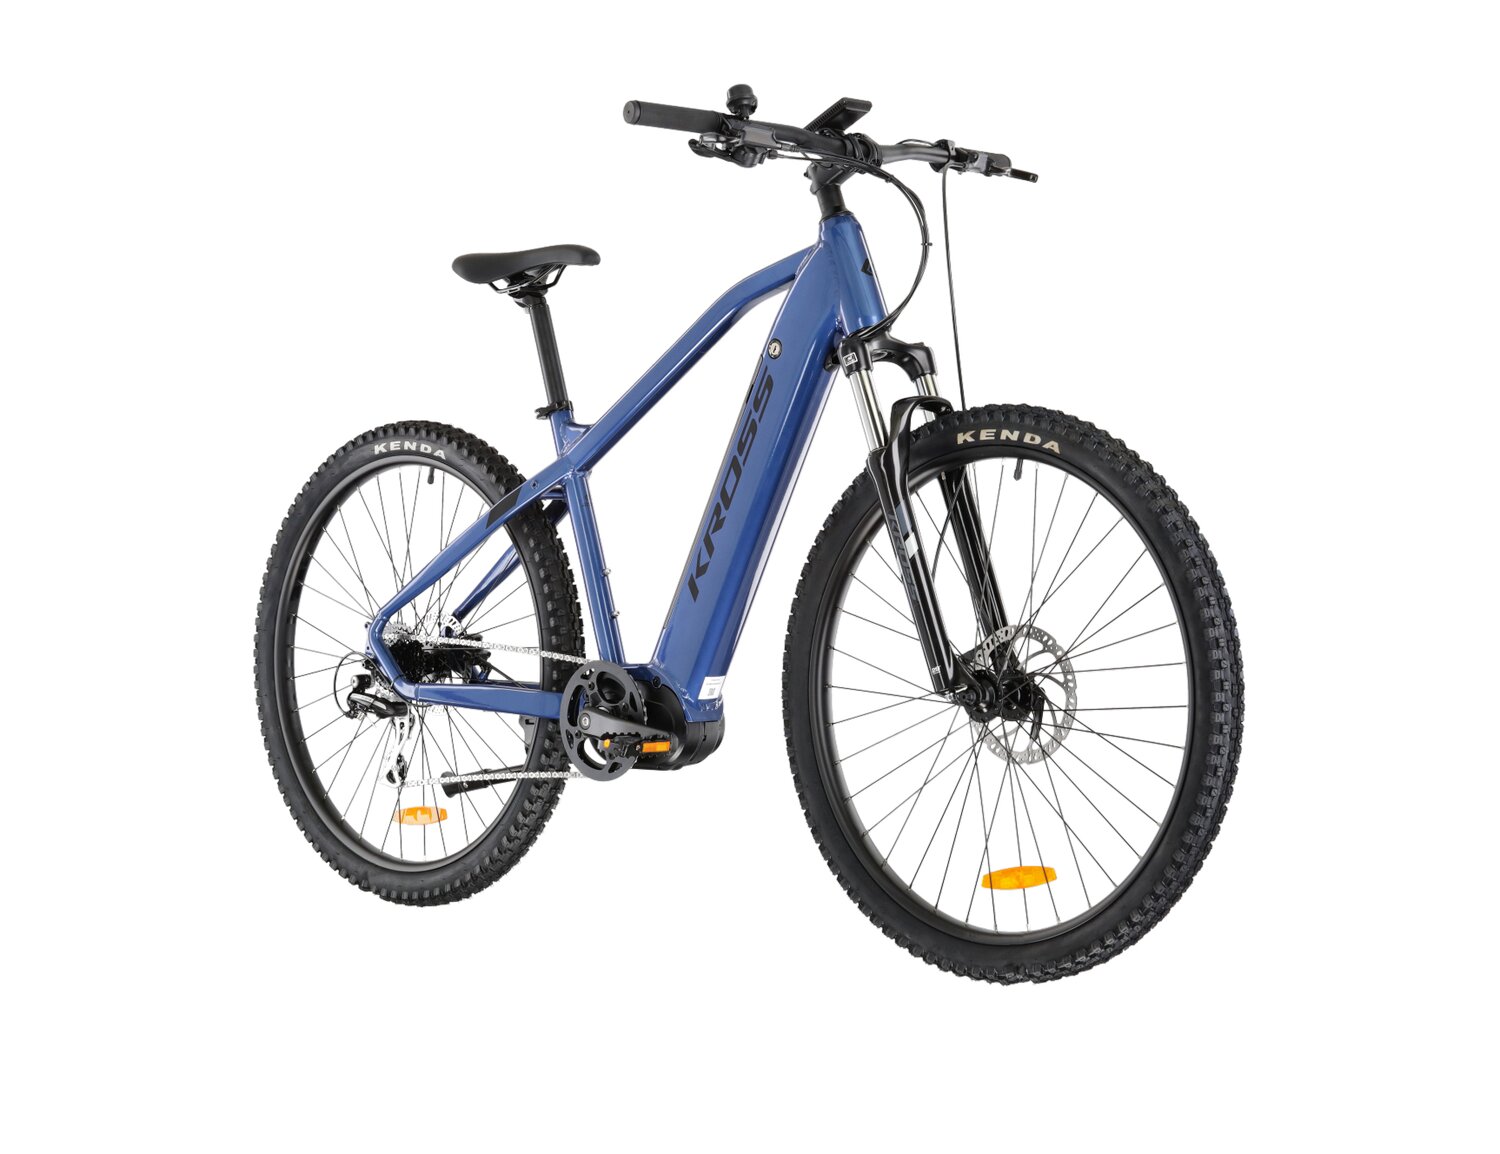 Elektryczny rower górski MTB Kross Hexagon Boost 3.0 518 Wh na aluminiowej ramie w kolorze niebieskim wyposażony w osprzęt Shimano i napęd elektryczny Truckrun